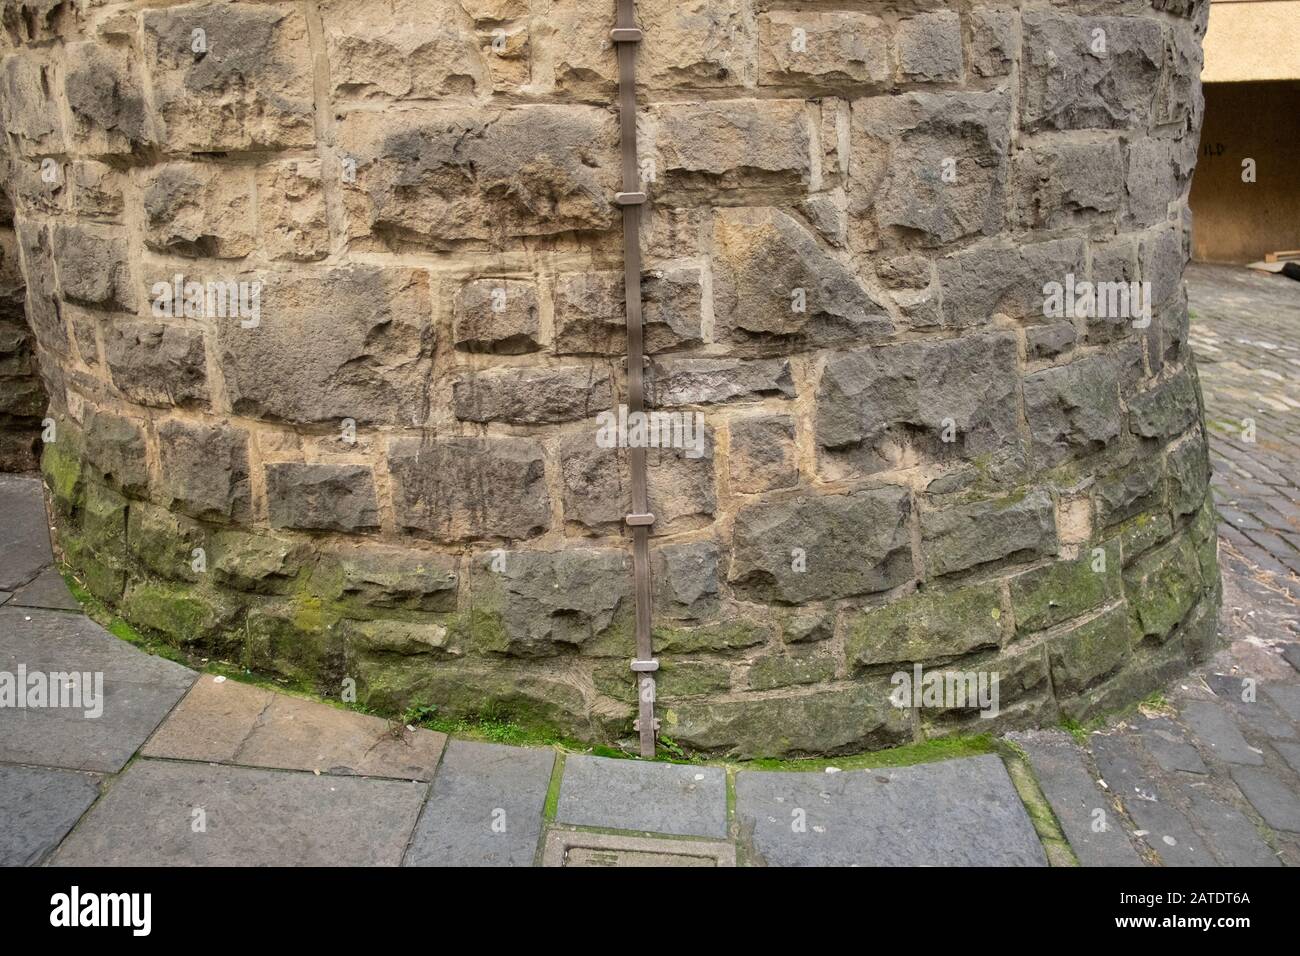 Vecchia parete curva in pietra con striscia metallica parafulmine, splash marks e muffa verde, Edimburgo, Scozia Foto Stock